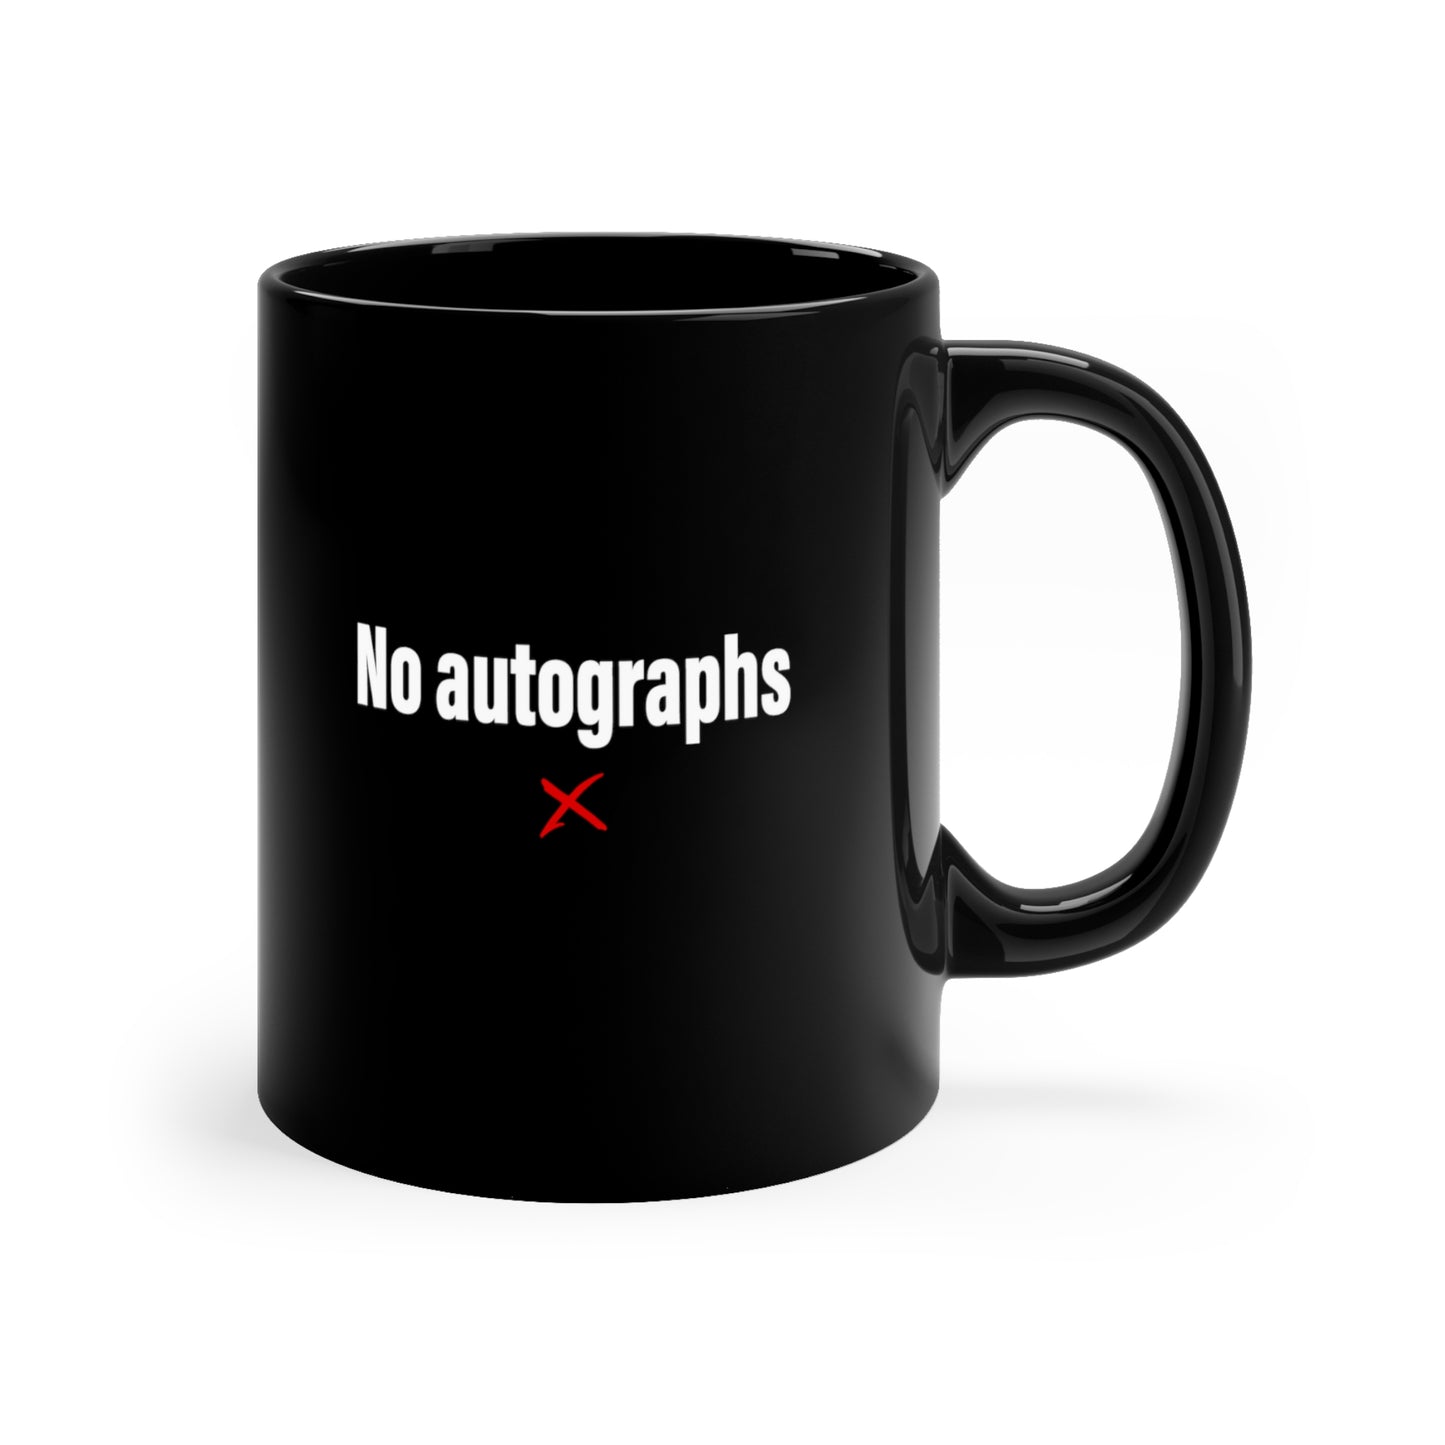 No autographs - Mug